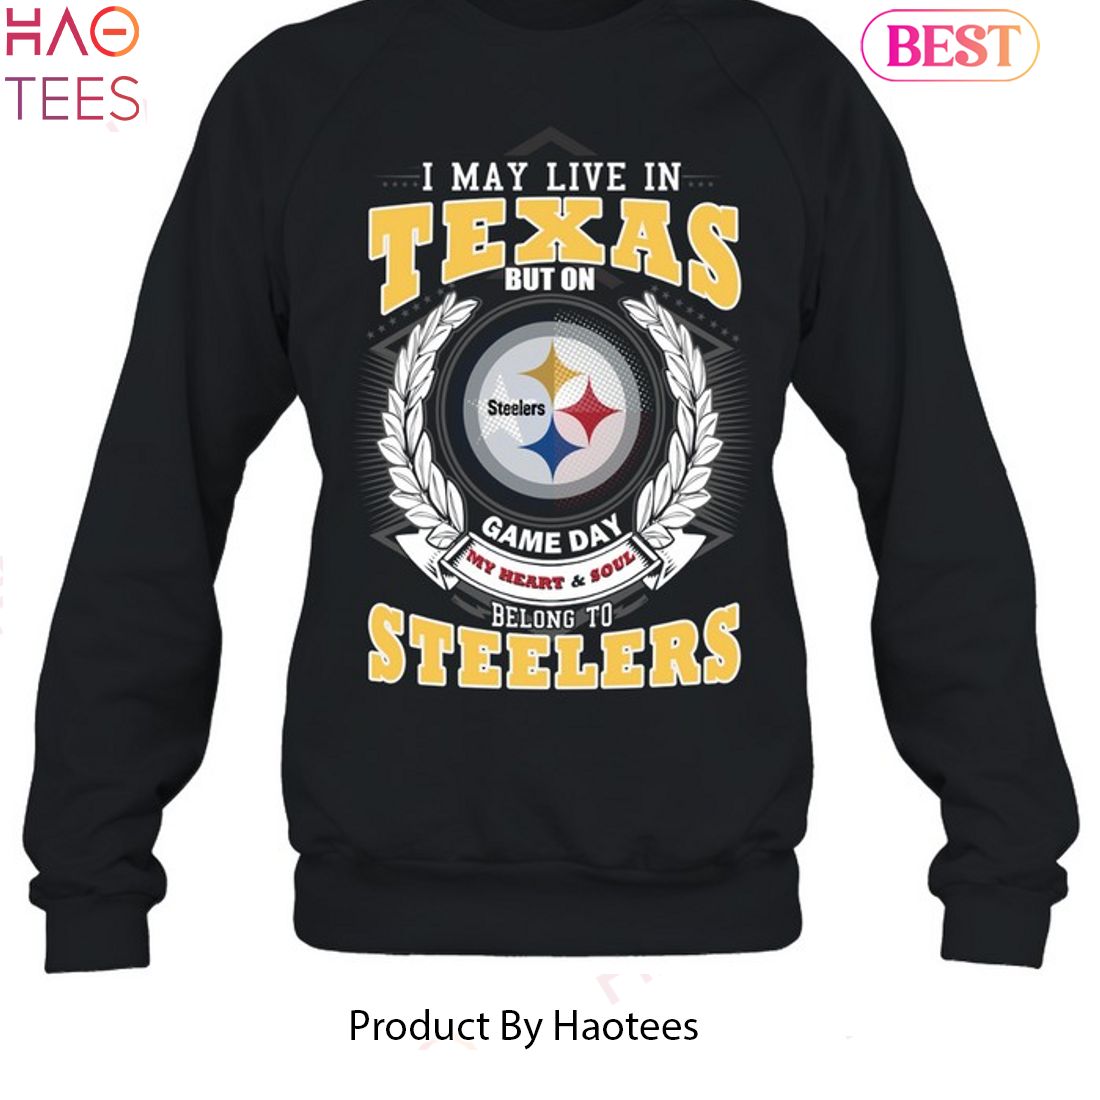 Steelers Merchandise - Alberts